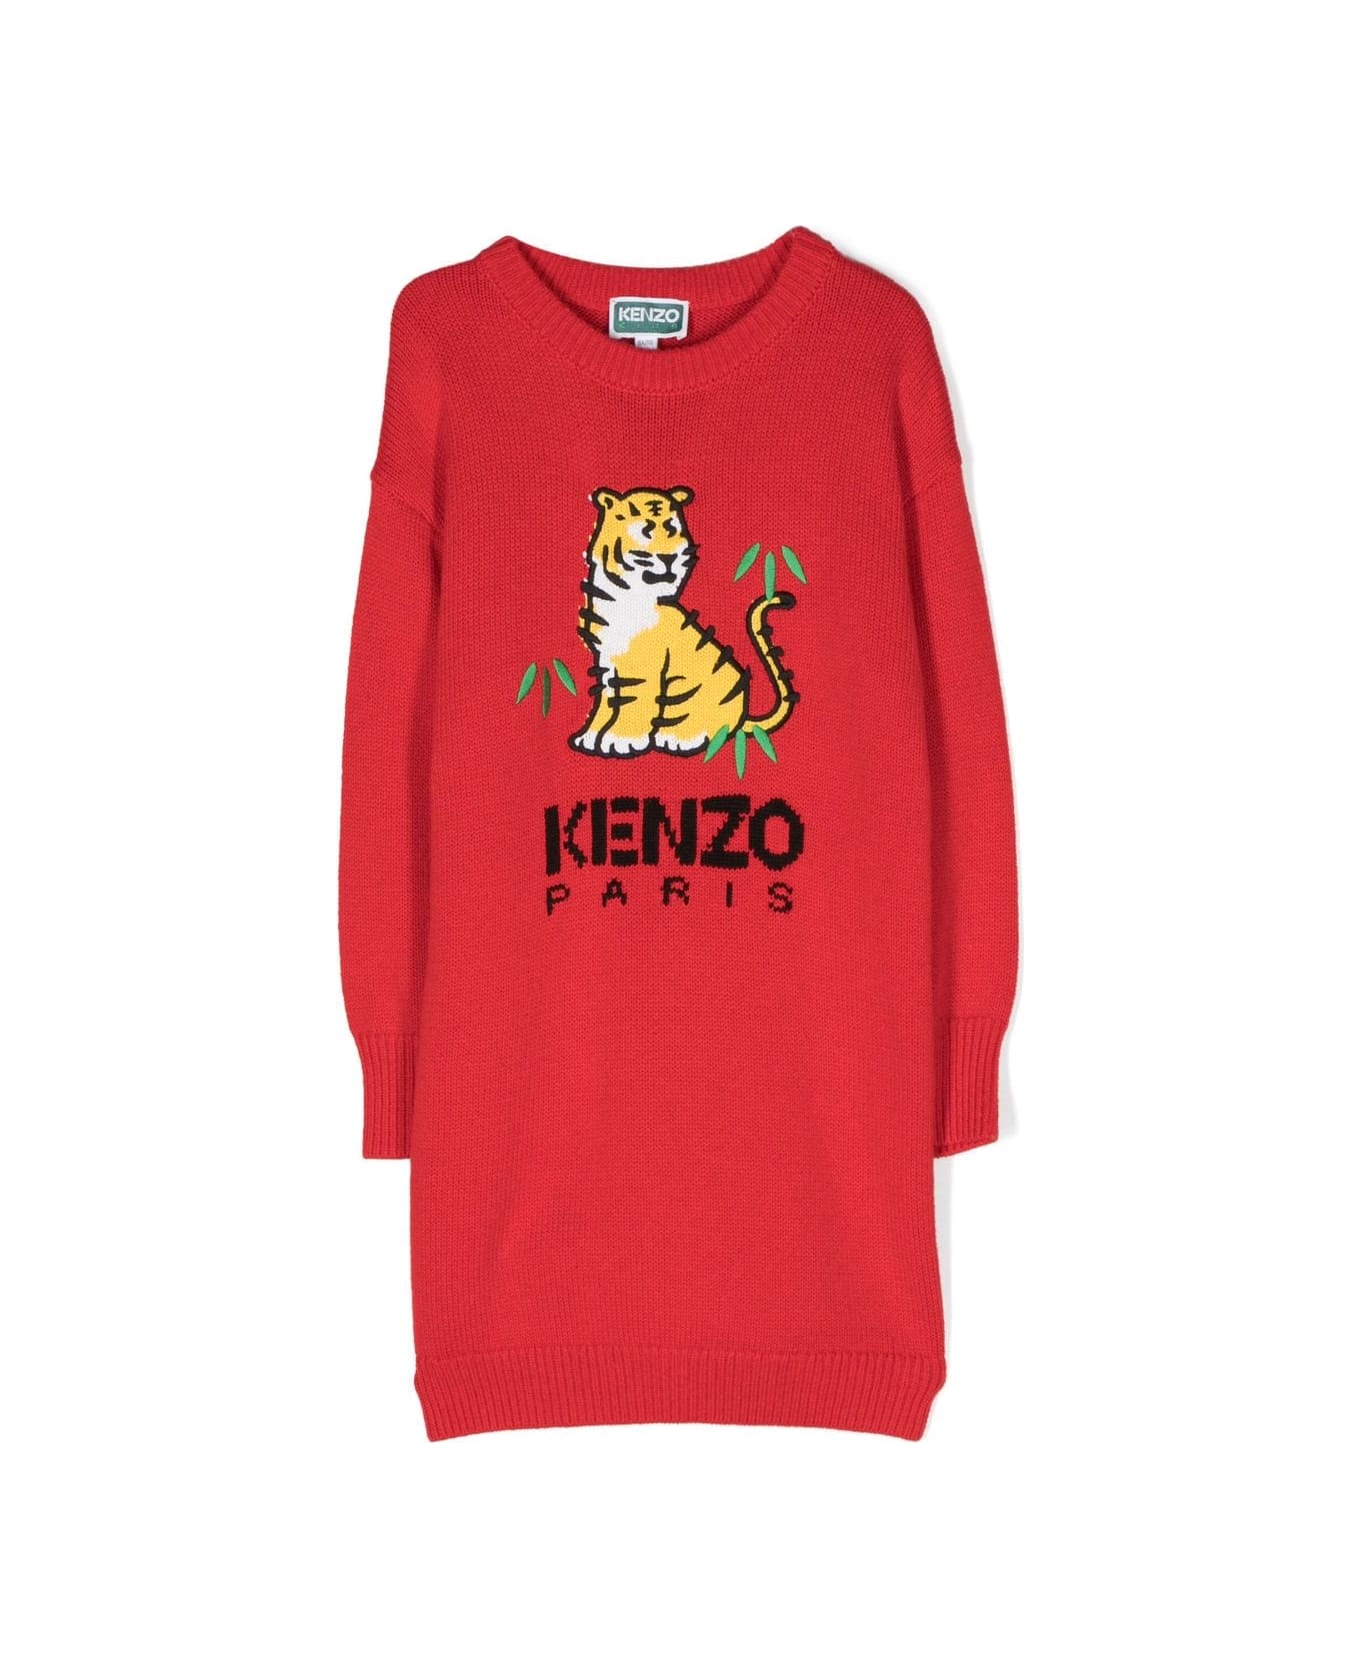 Kenzo Kids Kenzo Abito Rosso In Maglia Di Misto Cotone Bambina - Rosso